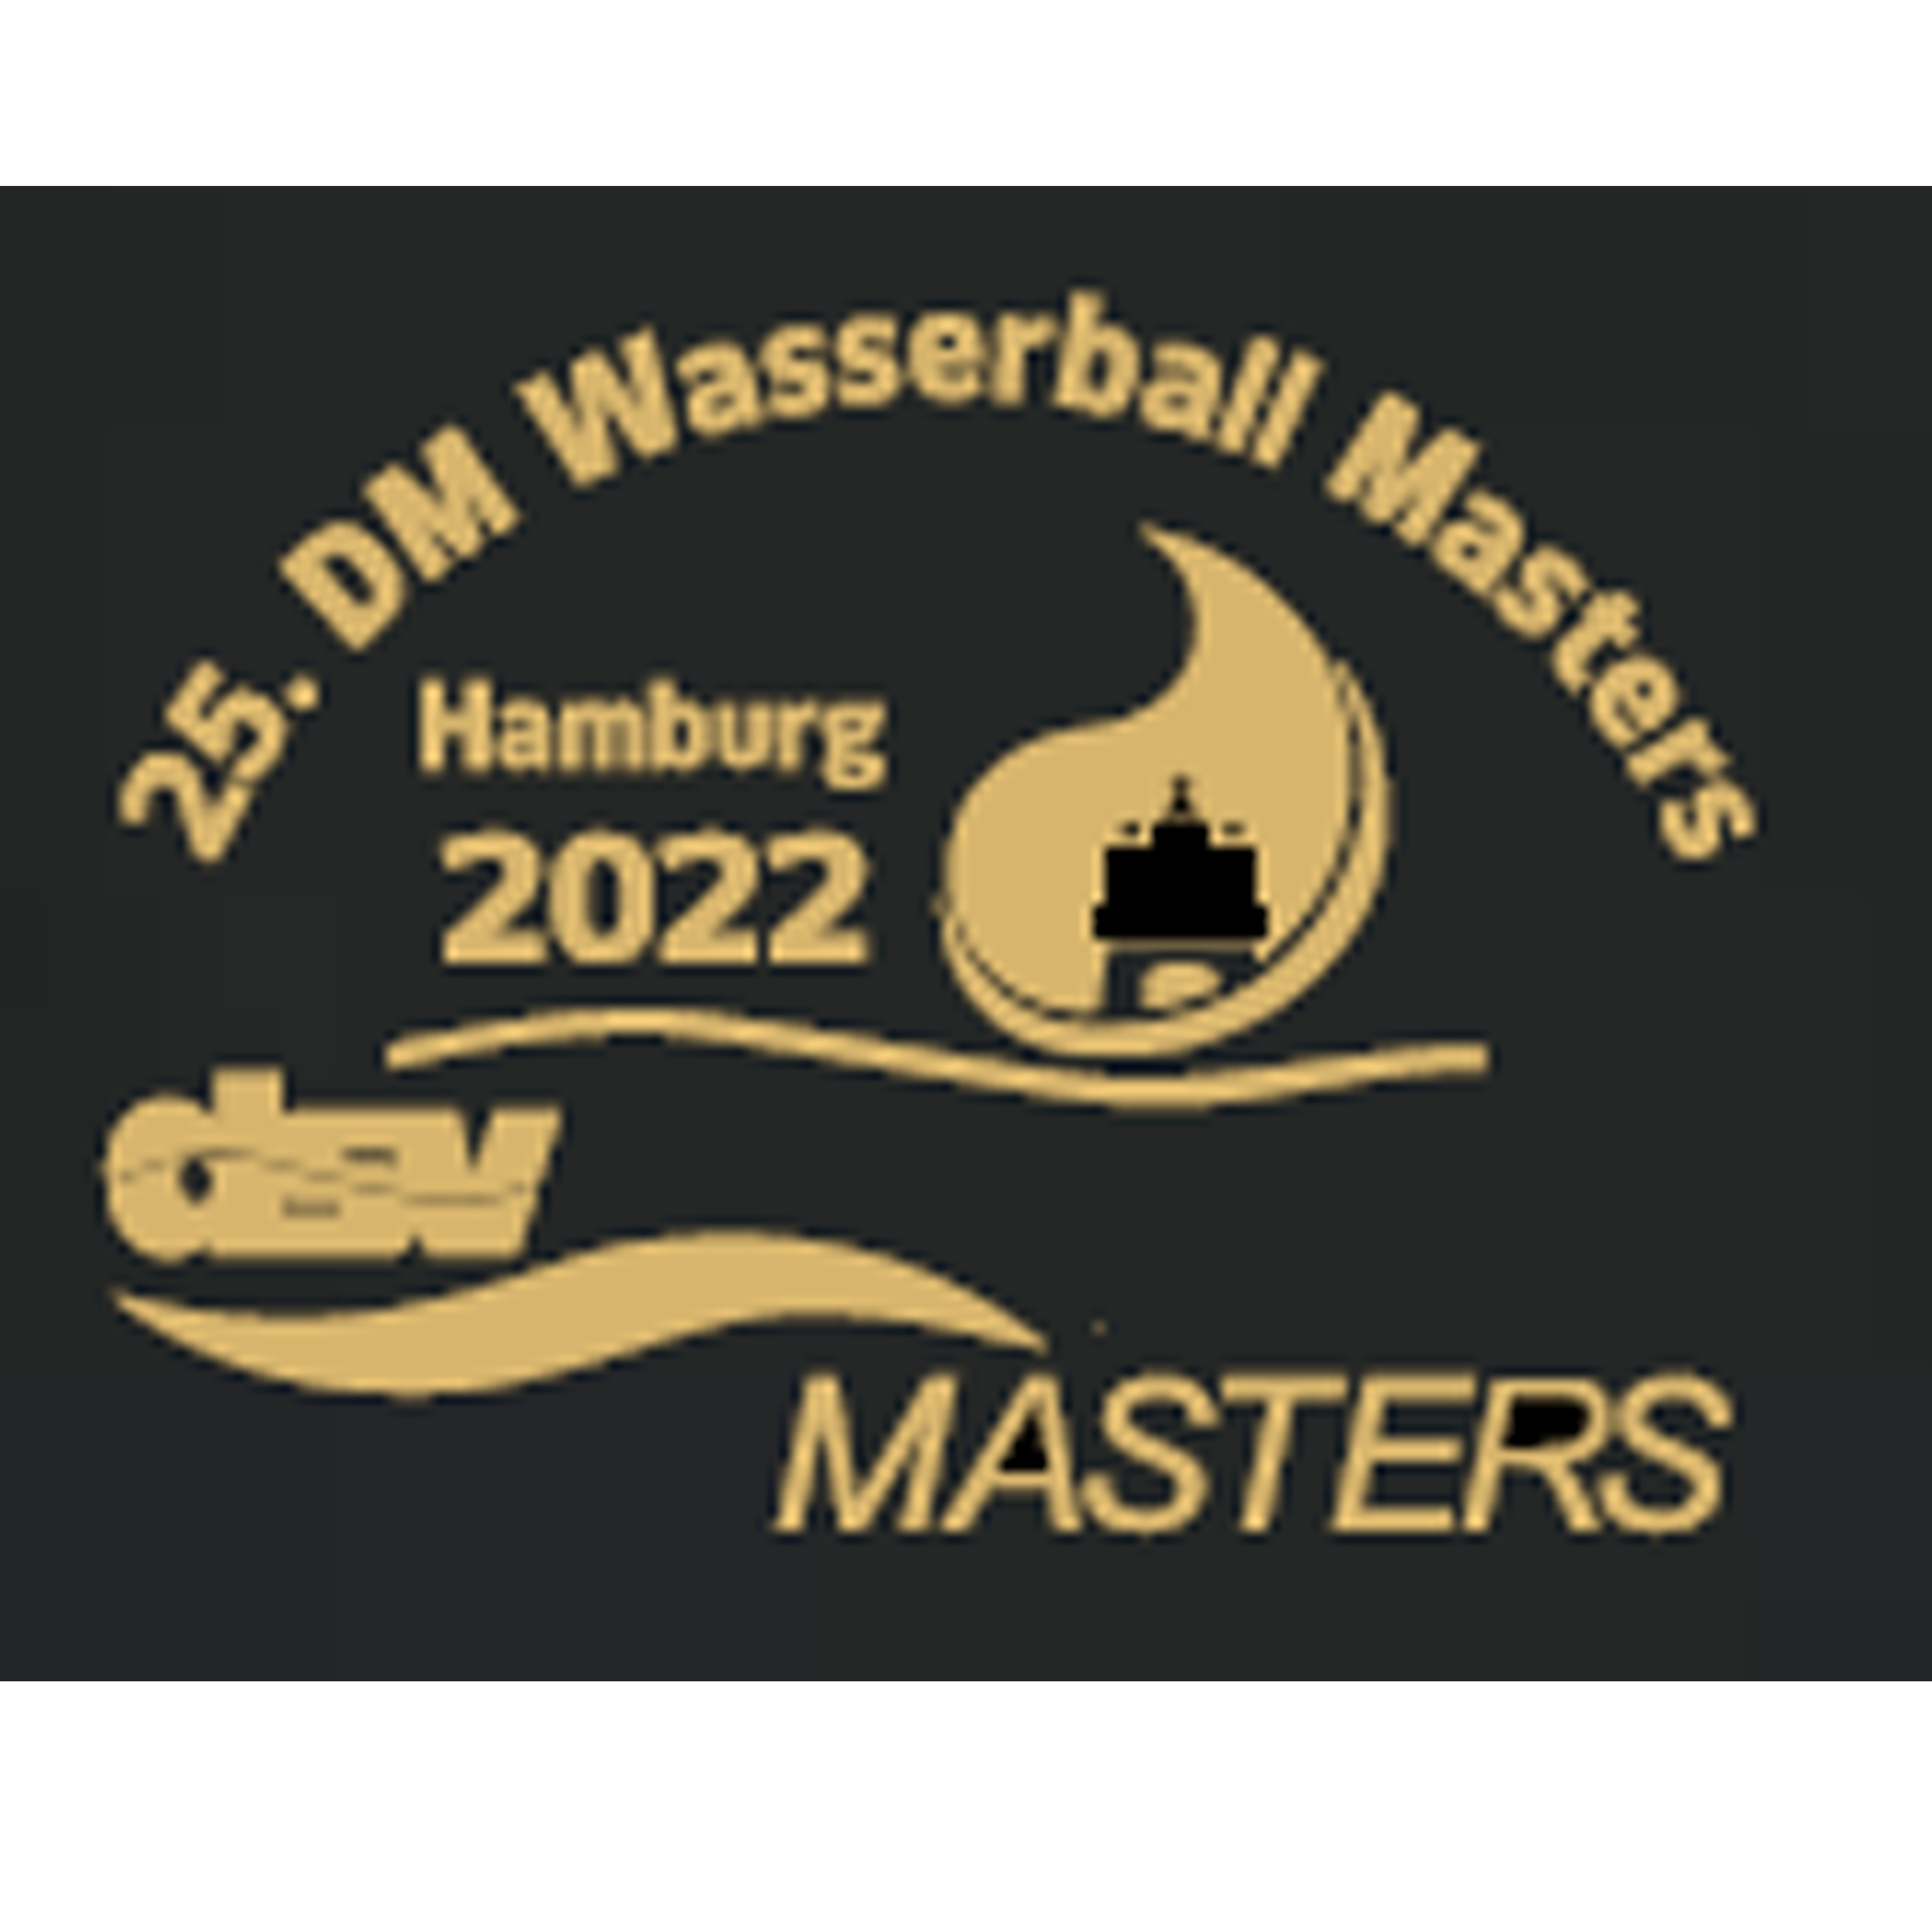 VeranstaltungsPolo DWMM 2022 in Hamburg